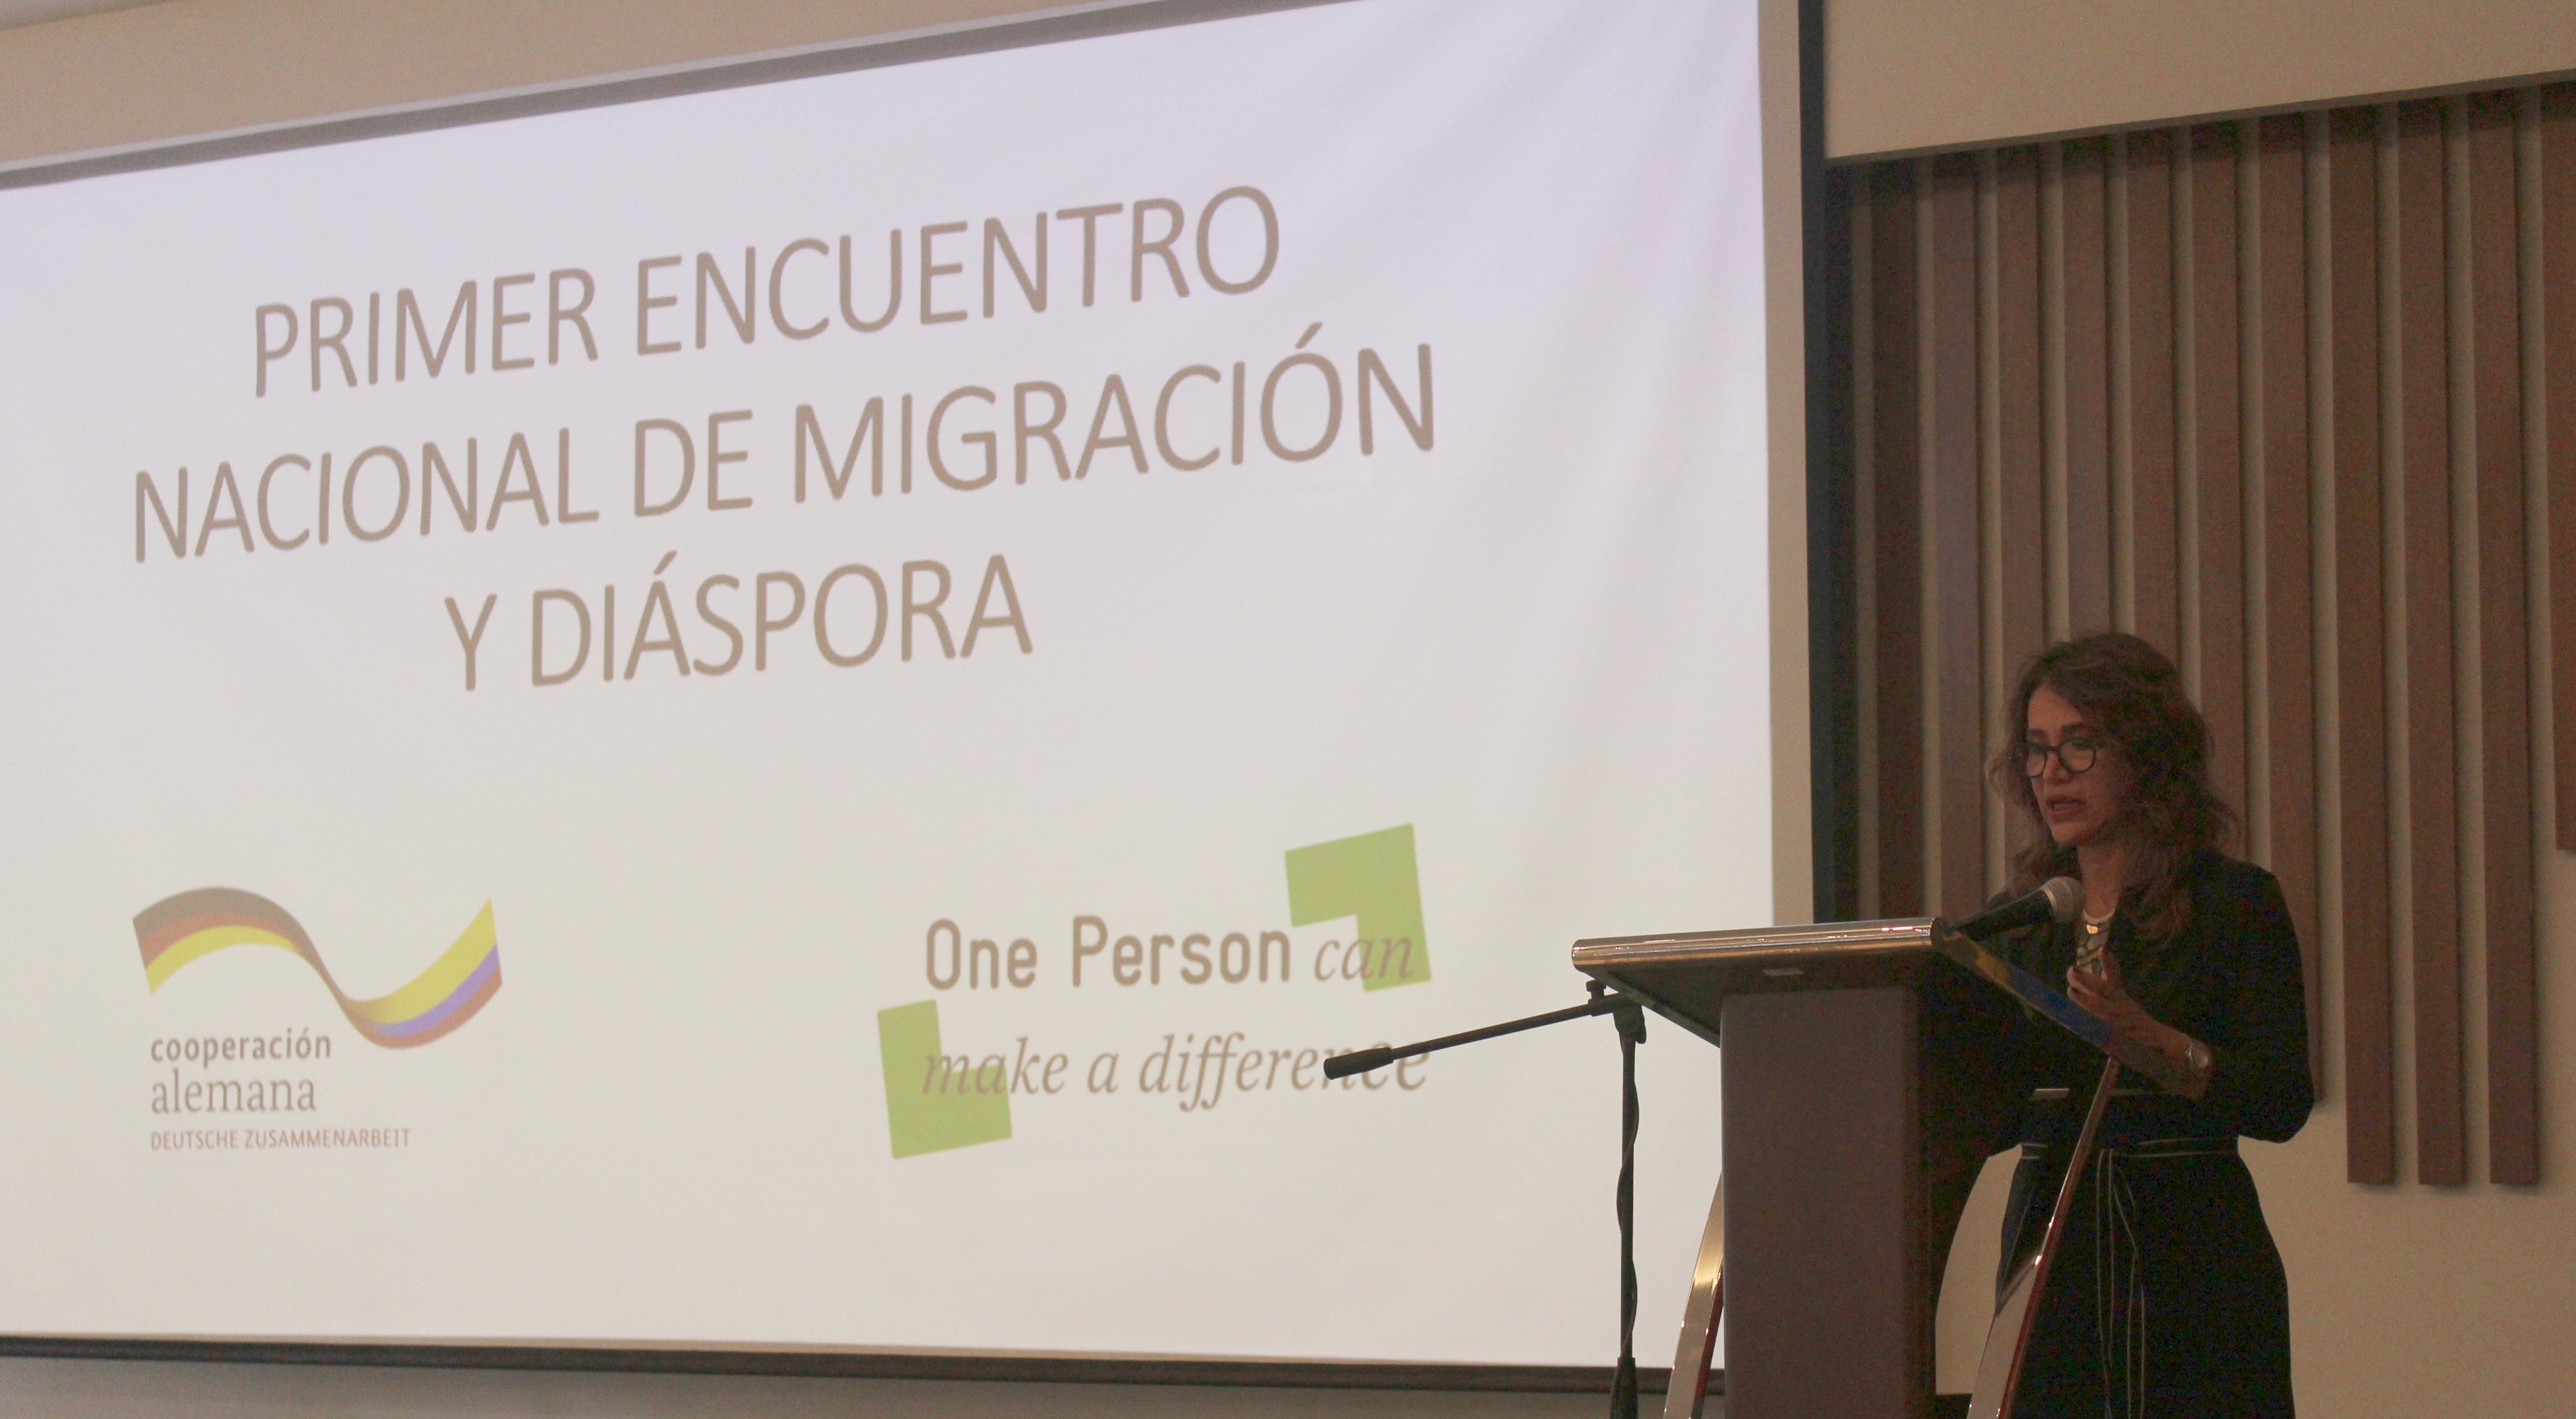 Cancillería participó en “Primer encuentro nacional Migración y Diáspora”